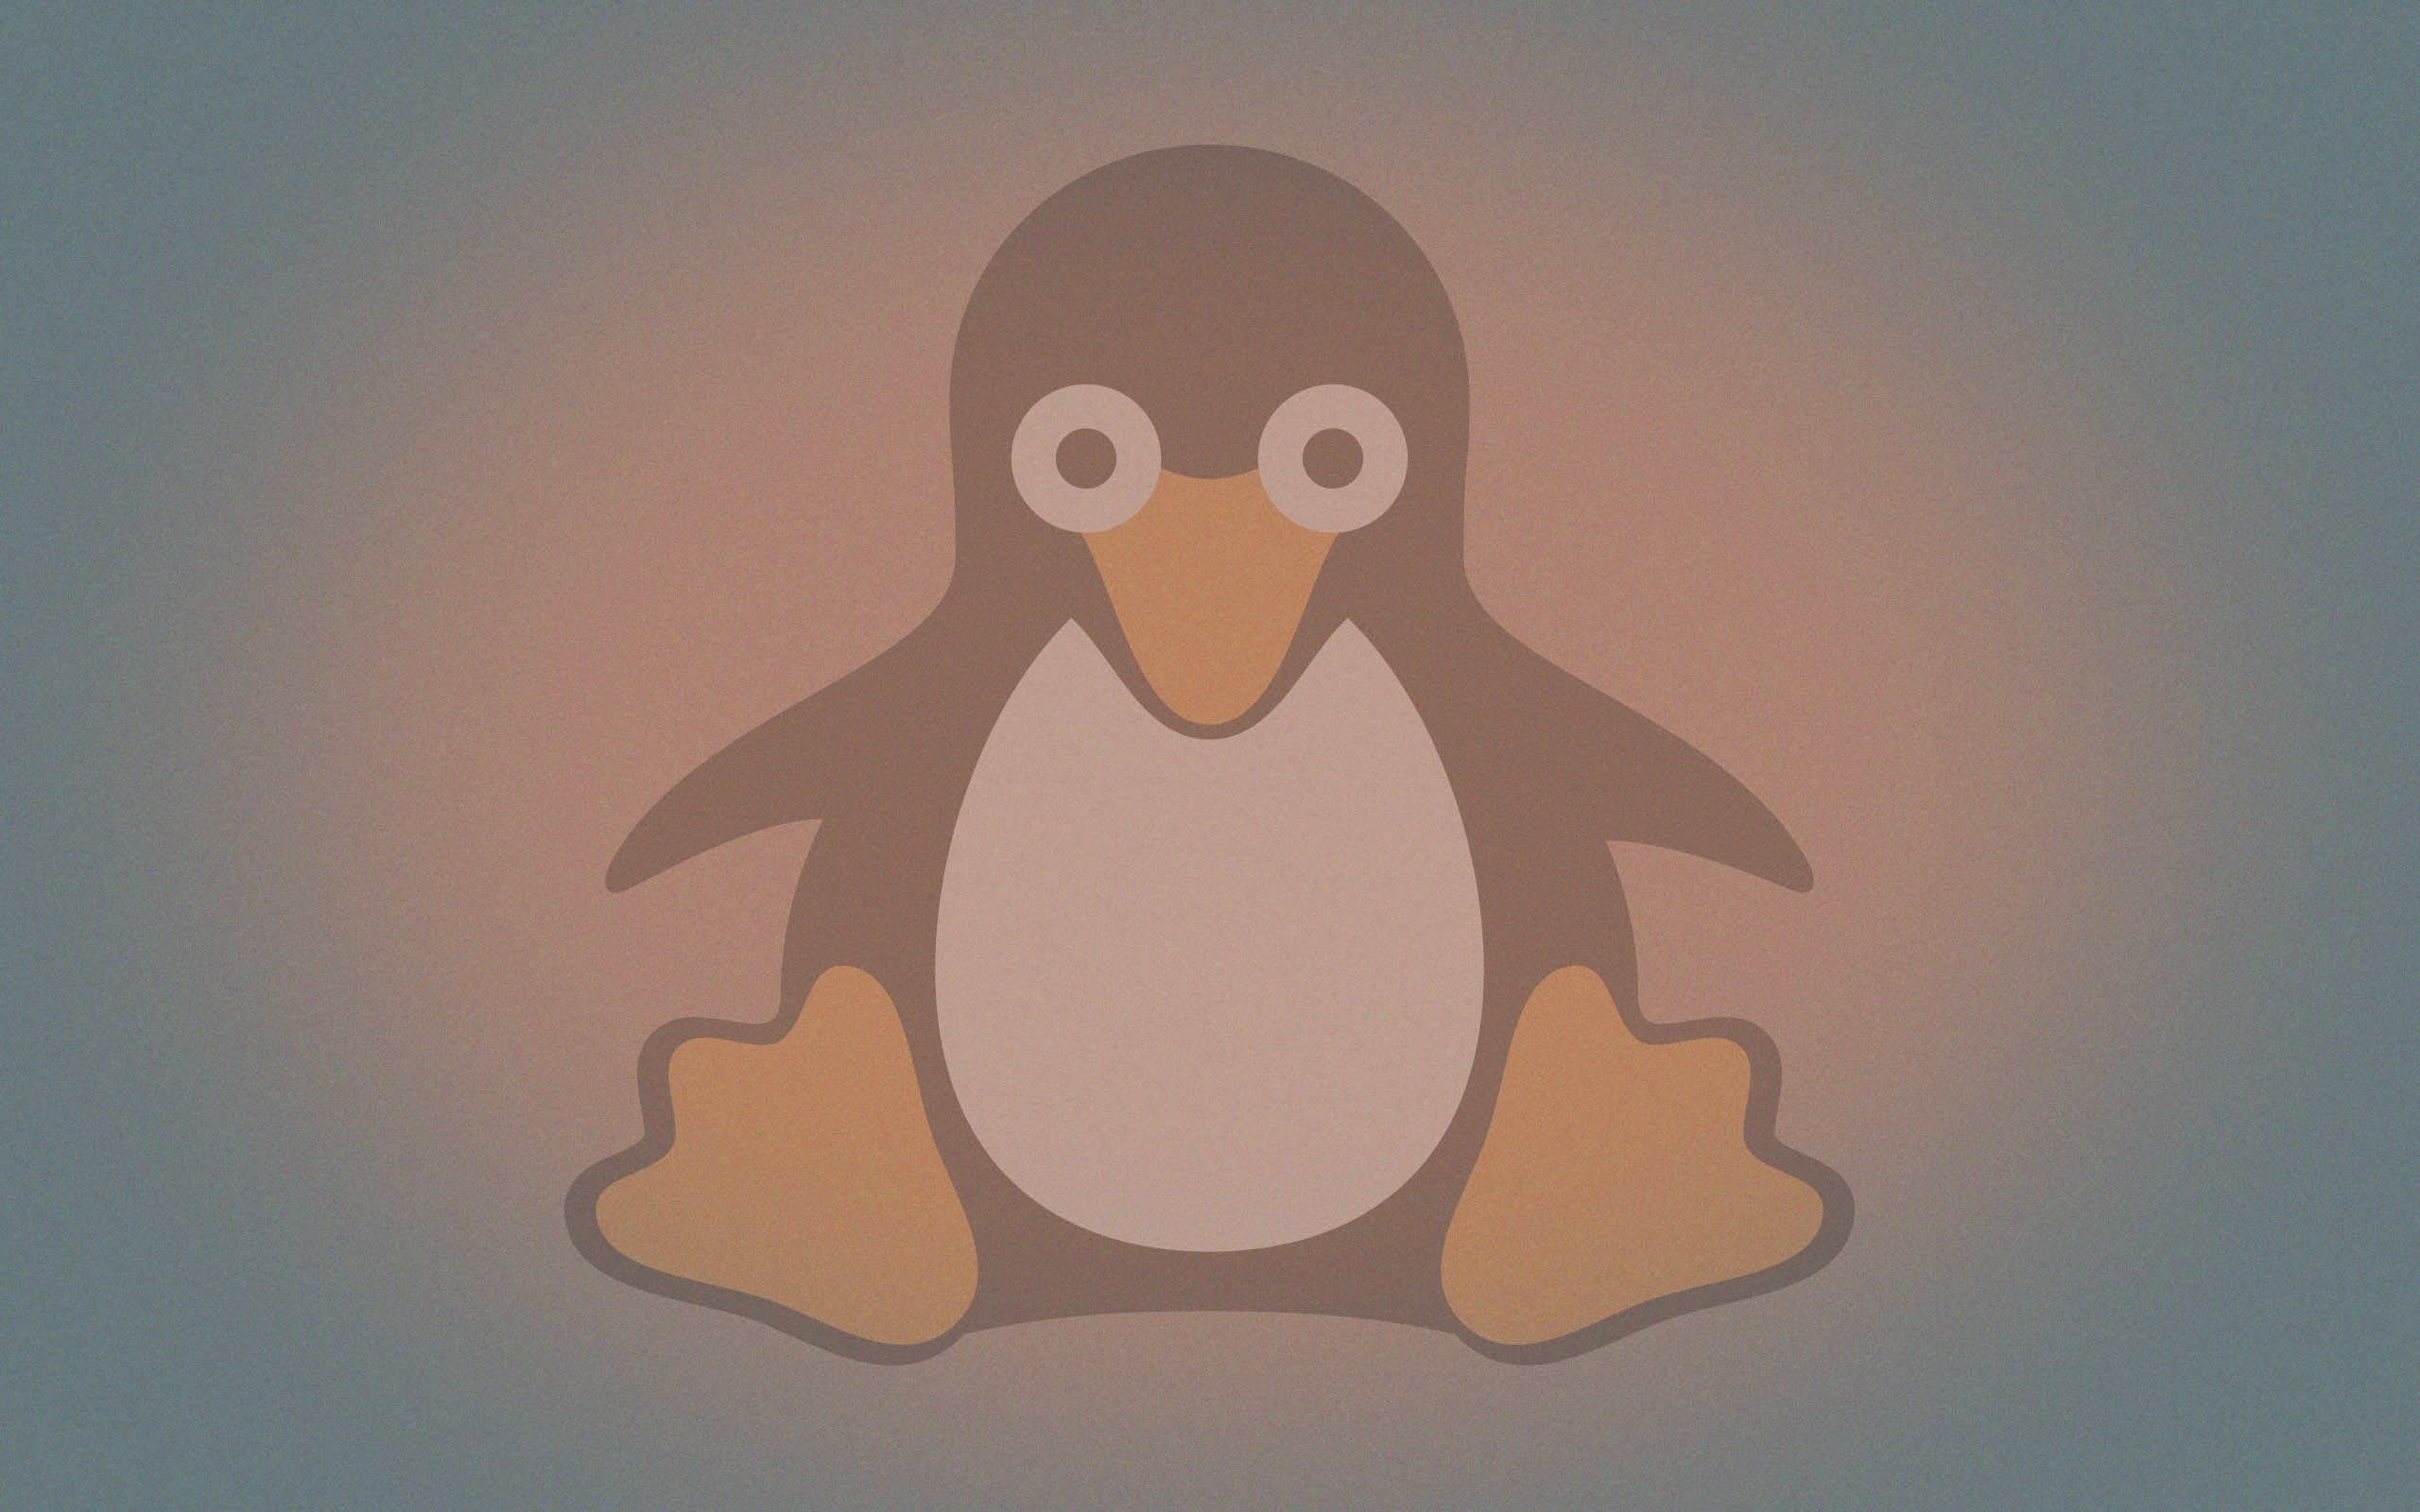 Linux Tux Open Source Penguins Logo 2560x1600